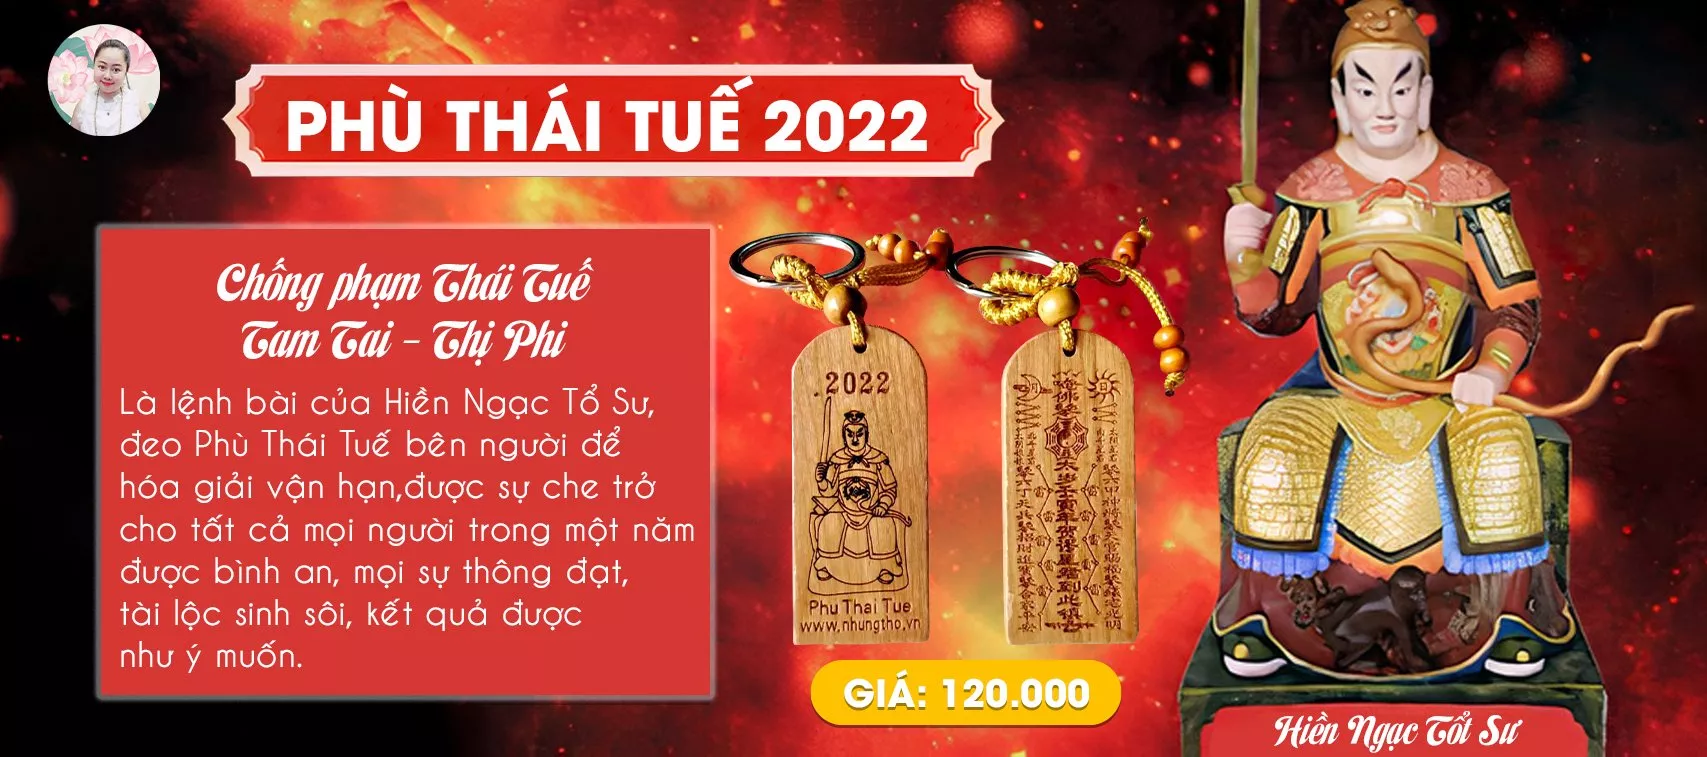 Phù Thái Tuế 2022 - Phòng Chống Tam Tai, Phạm Thái Tuế